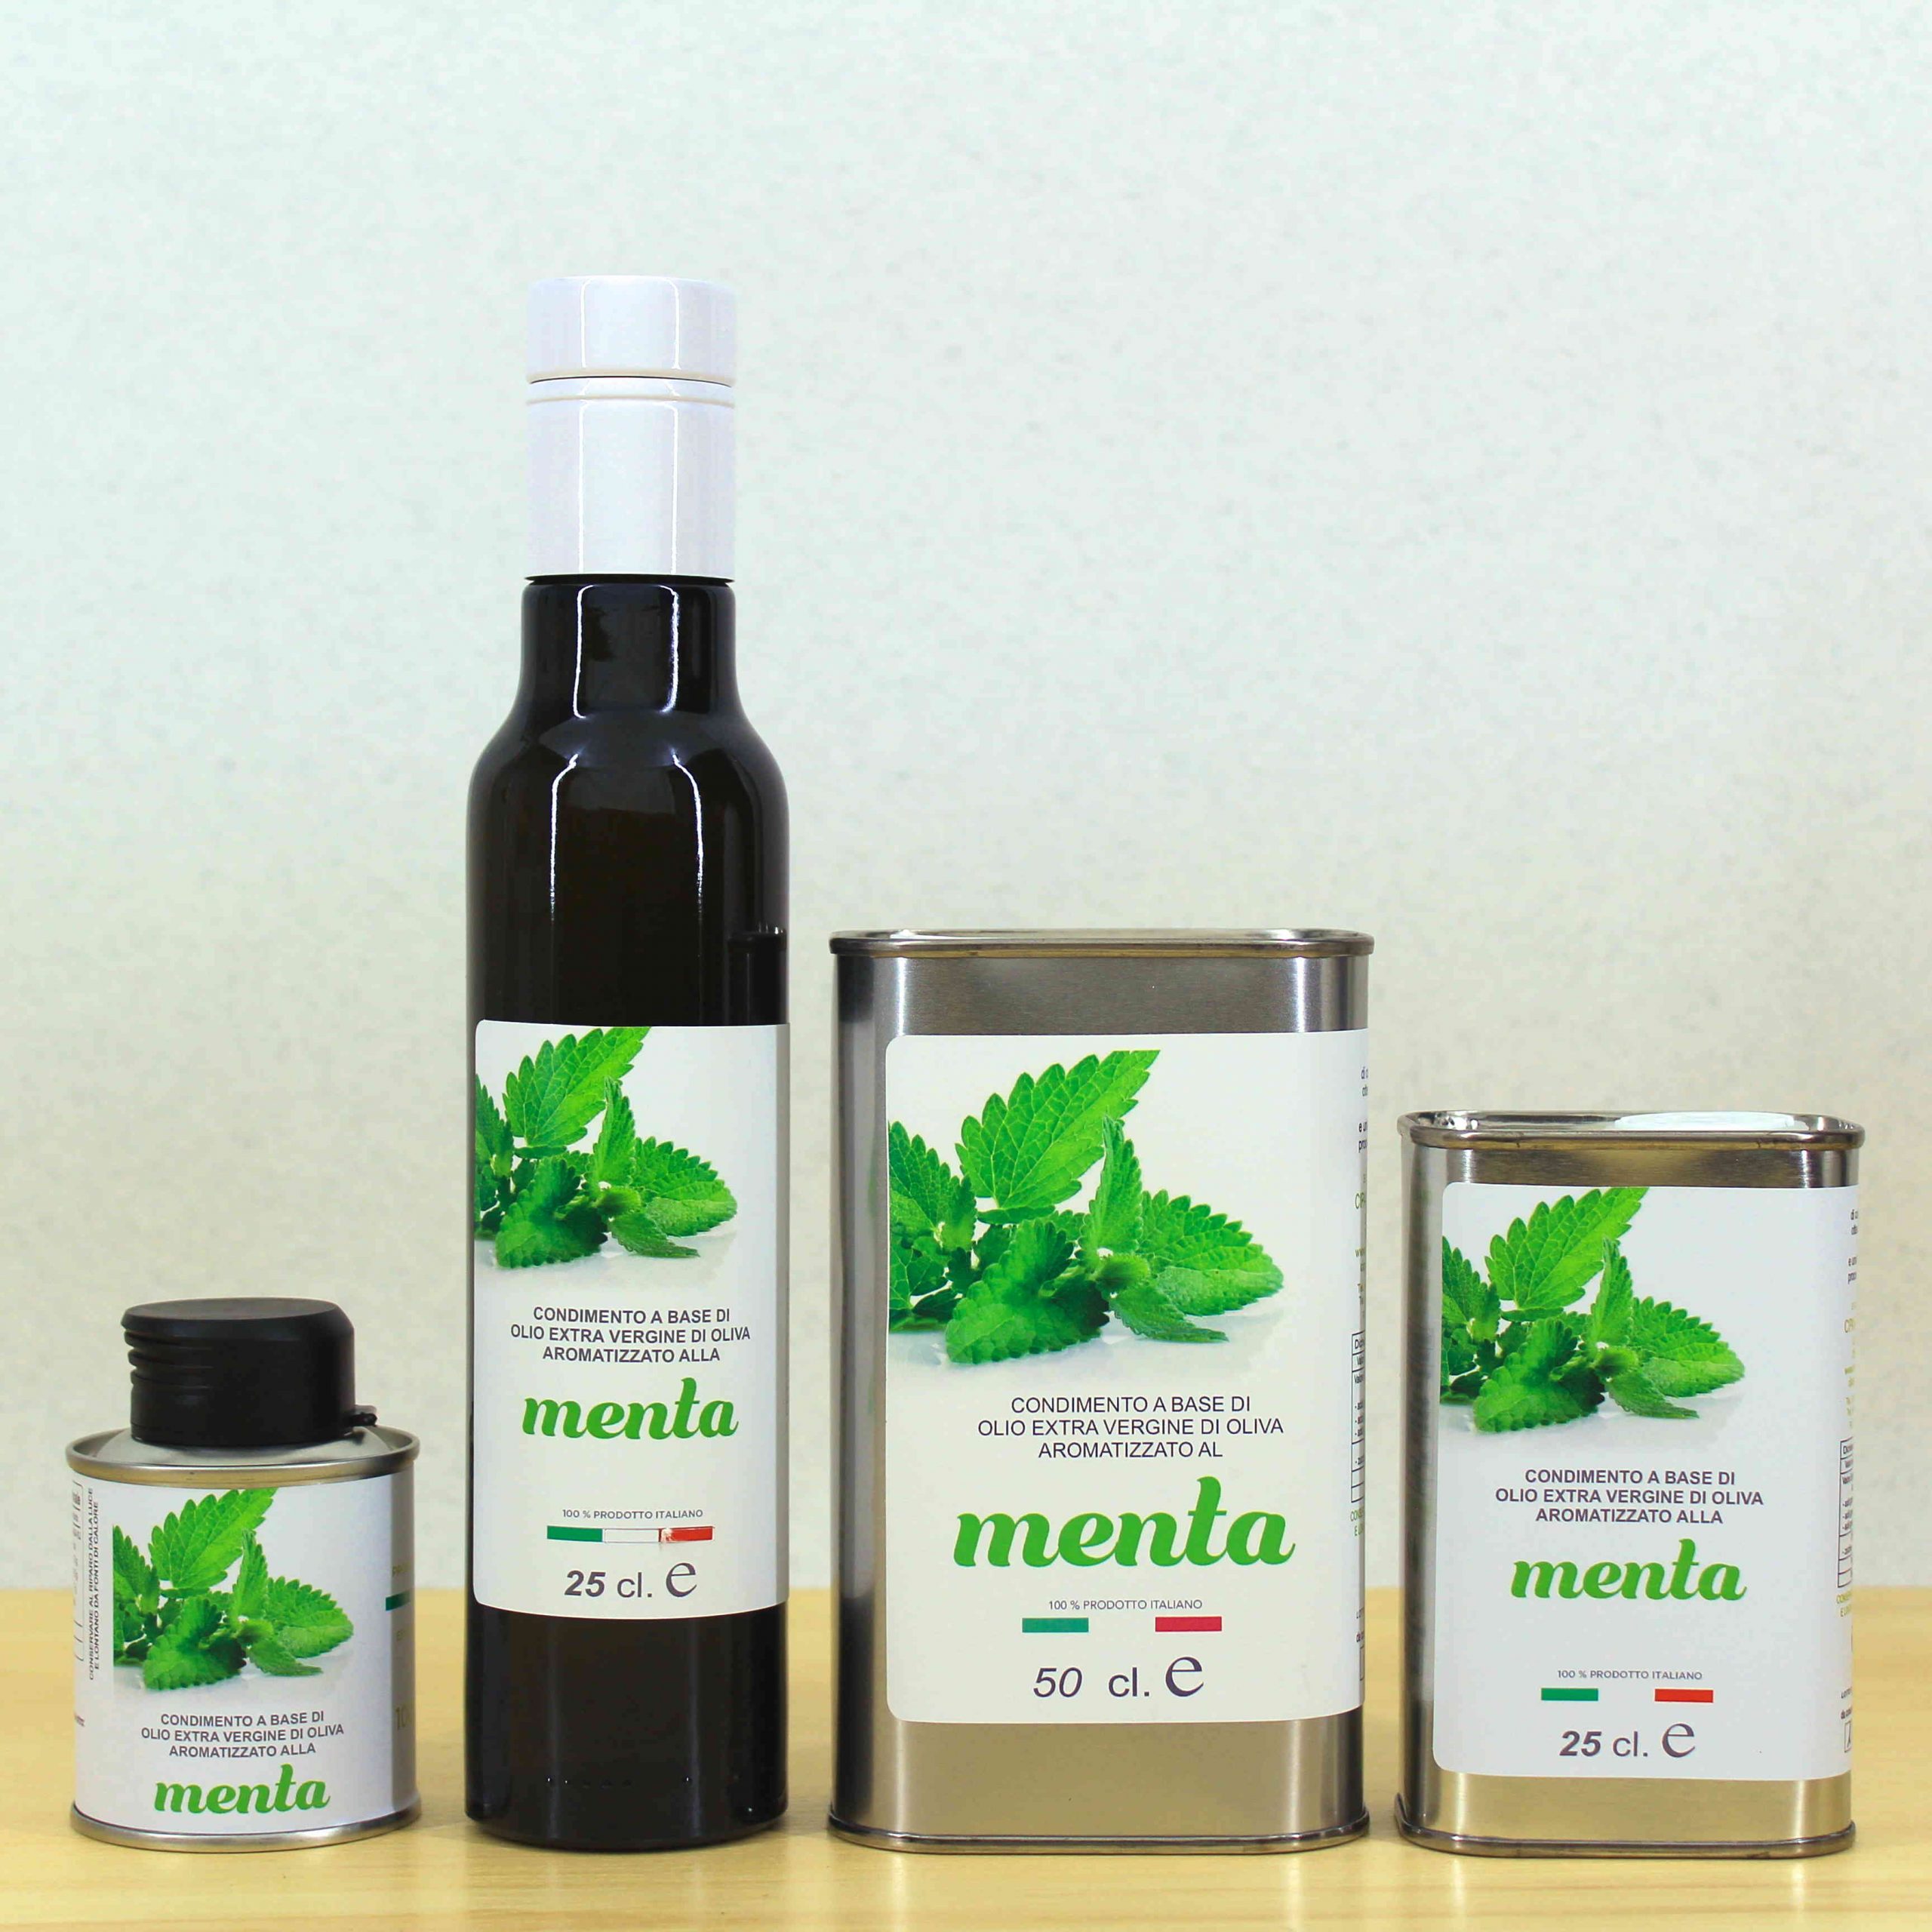 Condimento a base di olio EVO aromatizzato alla Menta - Cipa Agricola - Acquista online